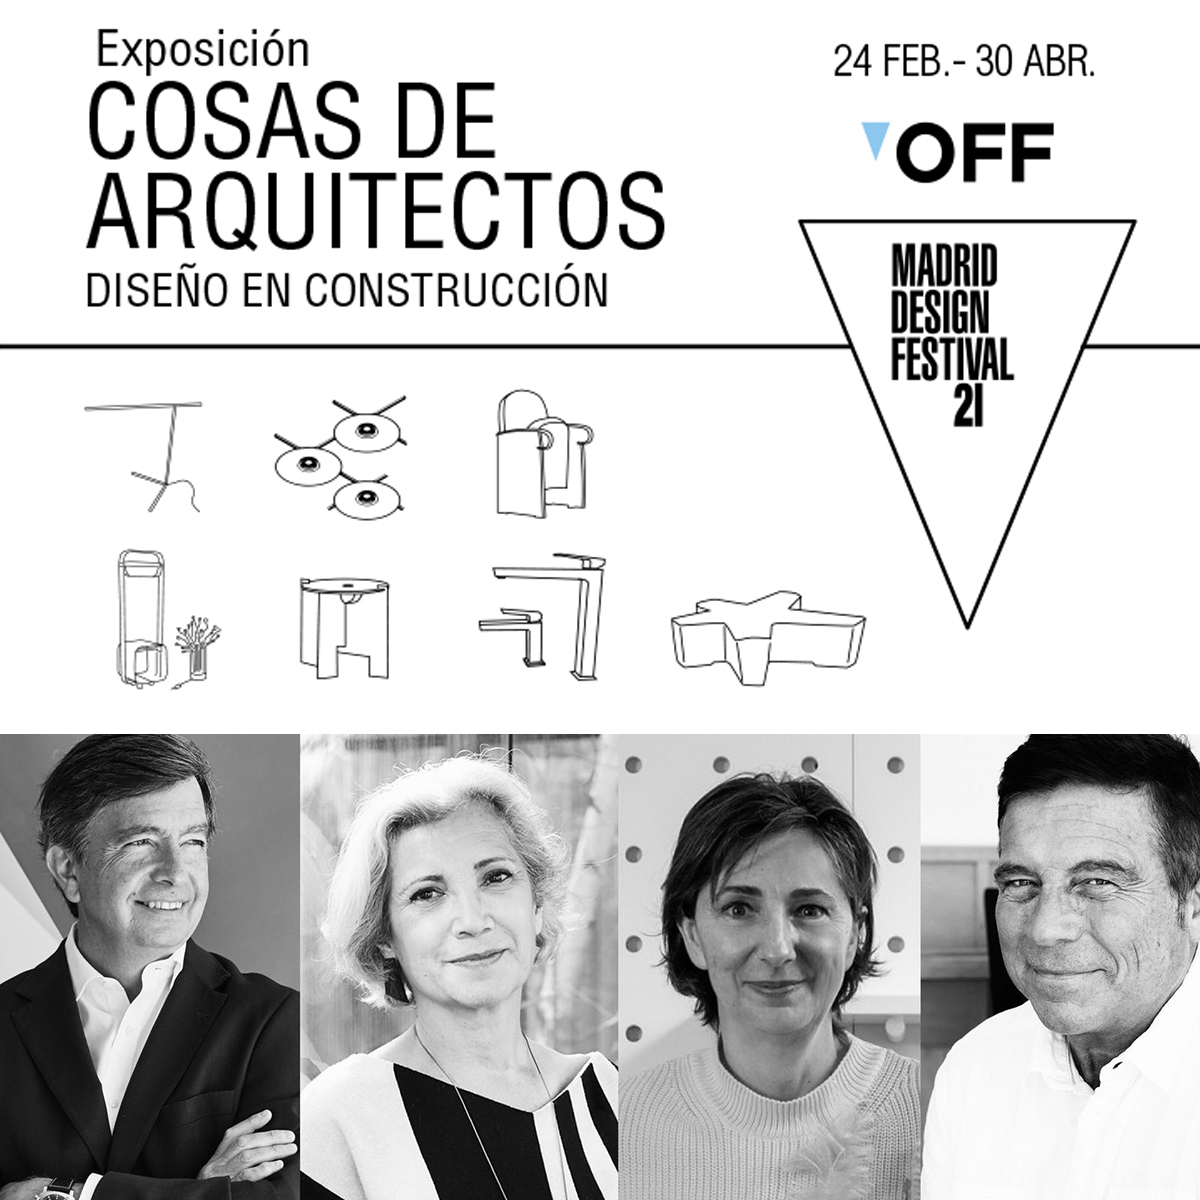 exposición Cosas de Arquitectos, diseño en construccion en ICONNO Jorge Juan Madrid MDF21